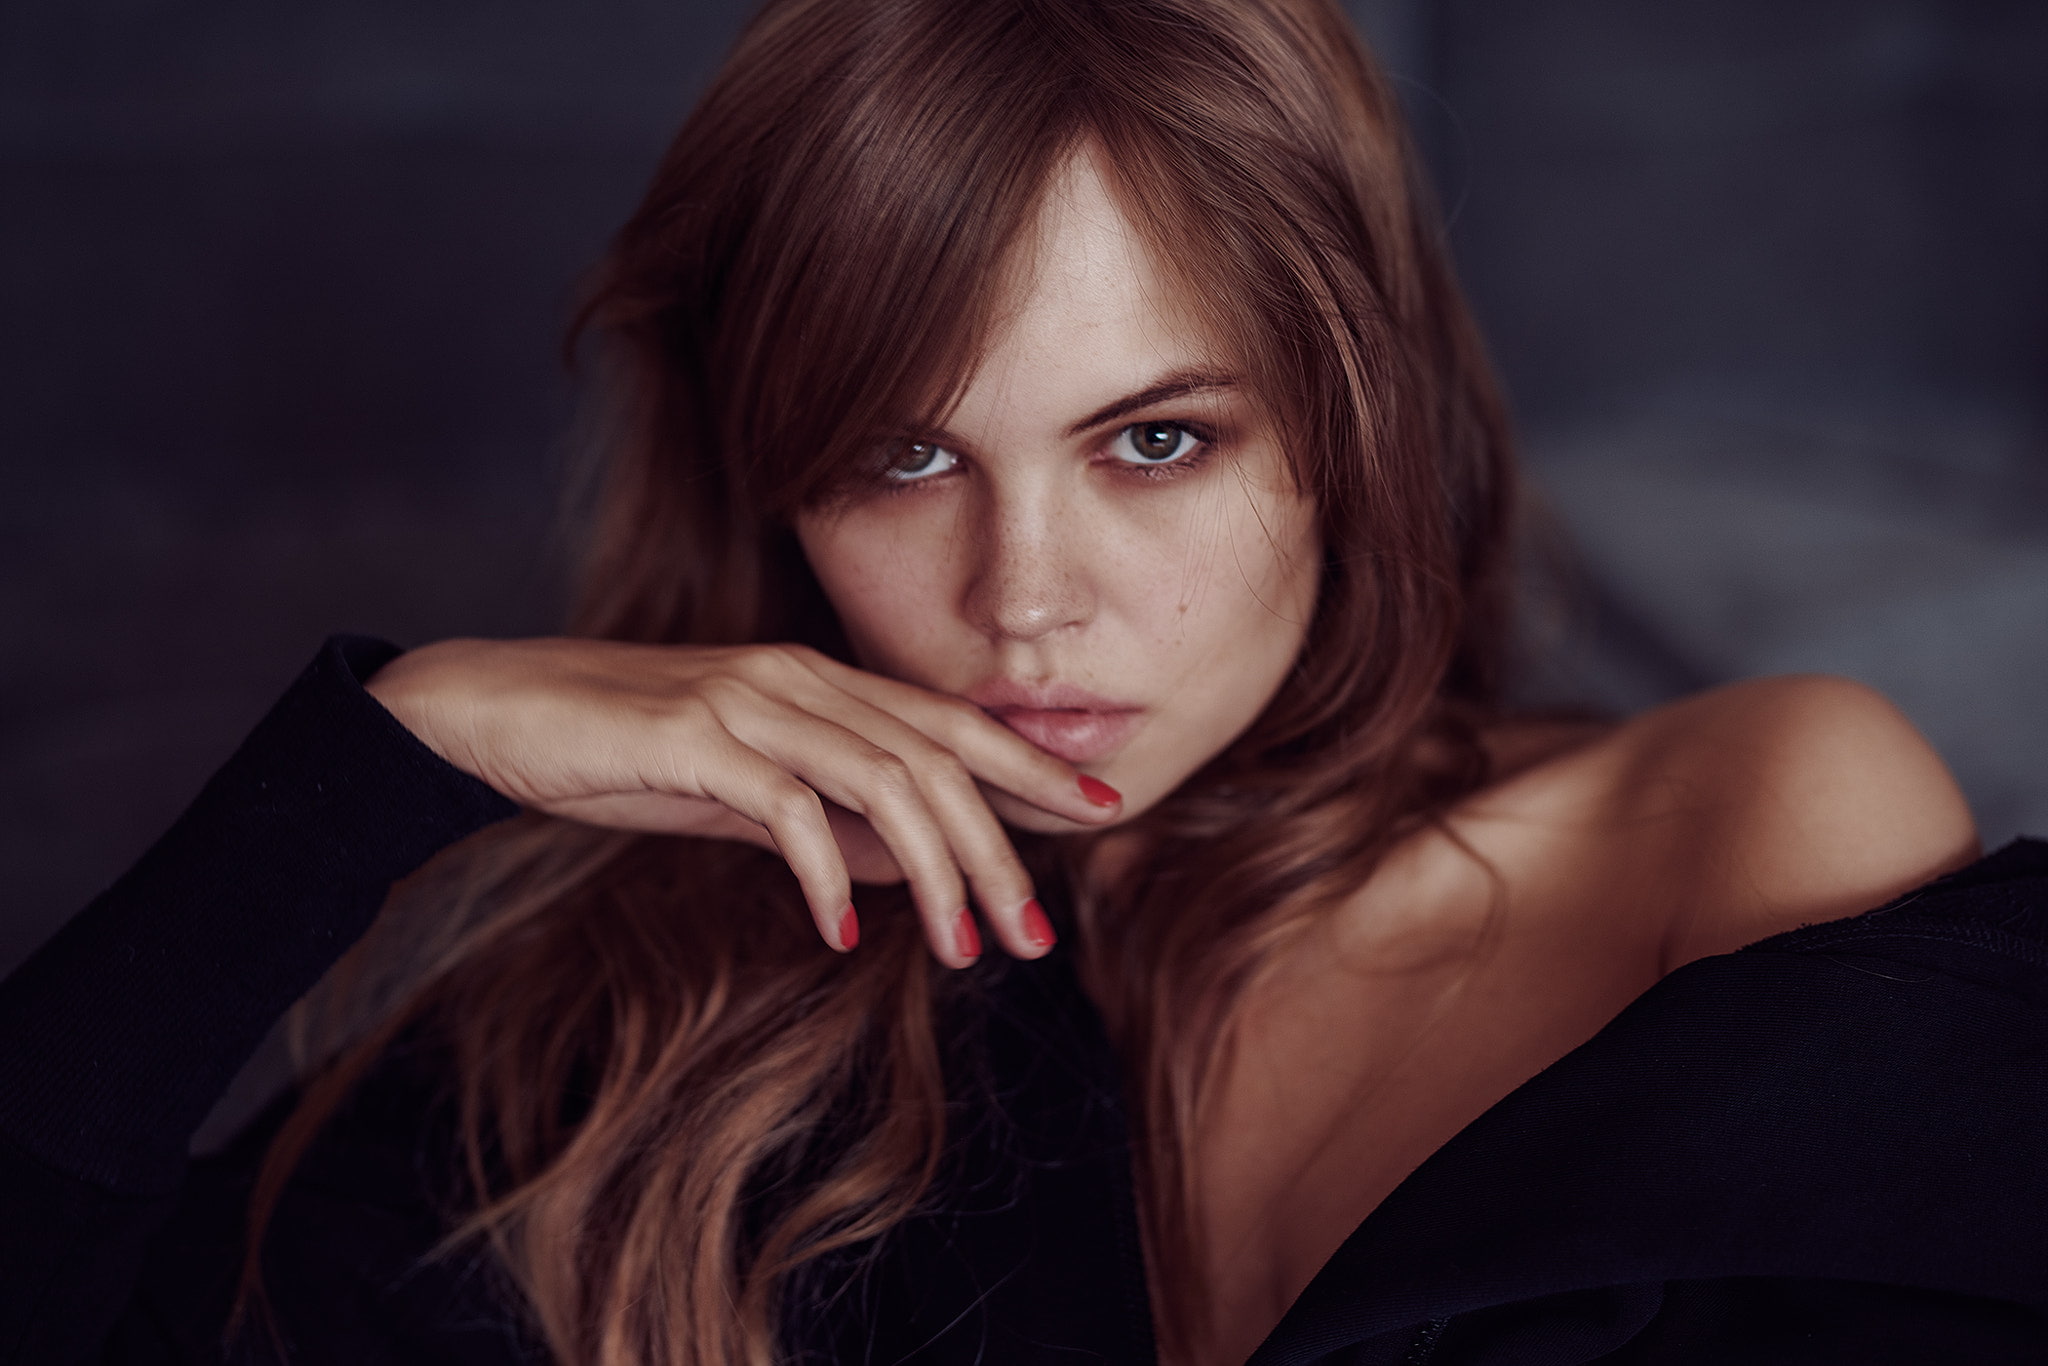 women, Anastasia Scheglova, red nails, portrait, finger on lips